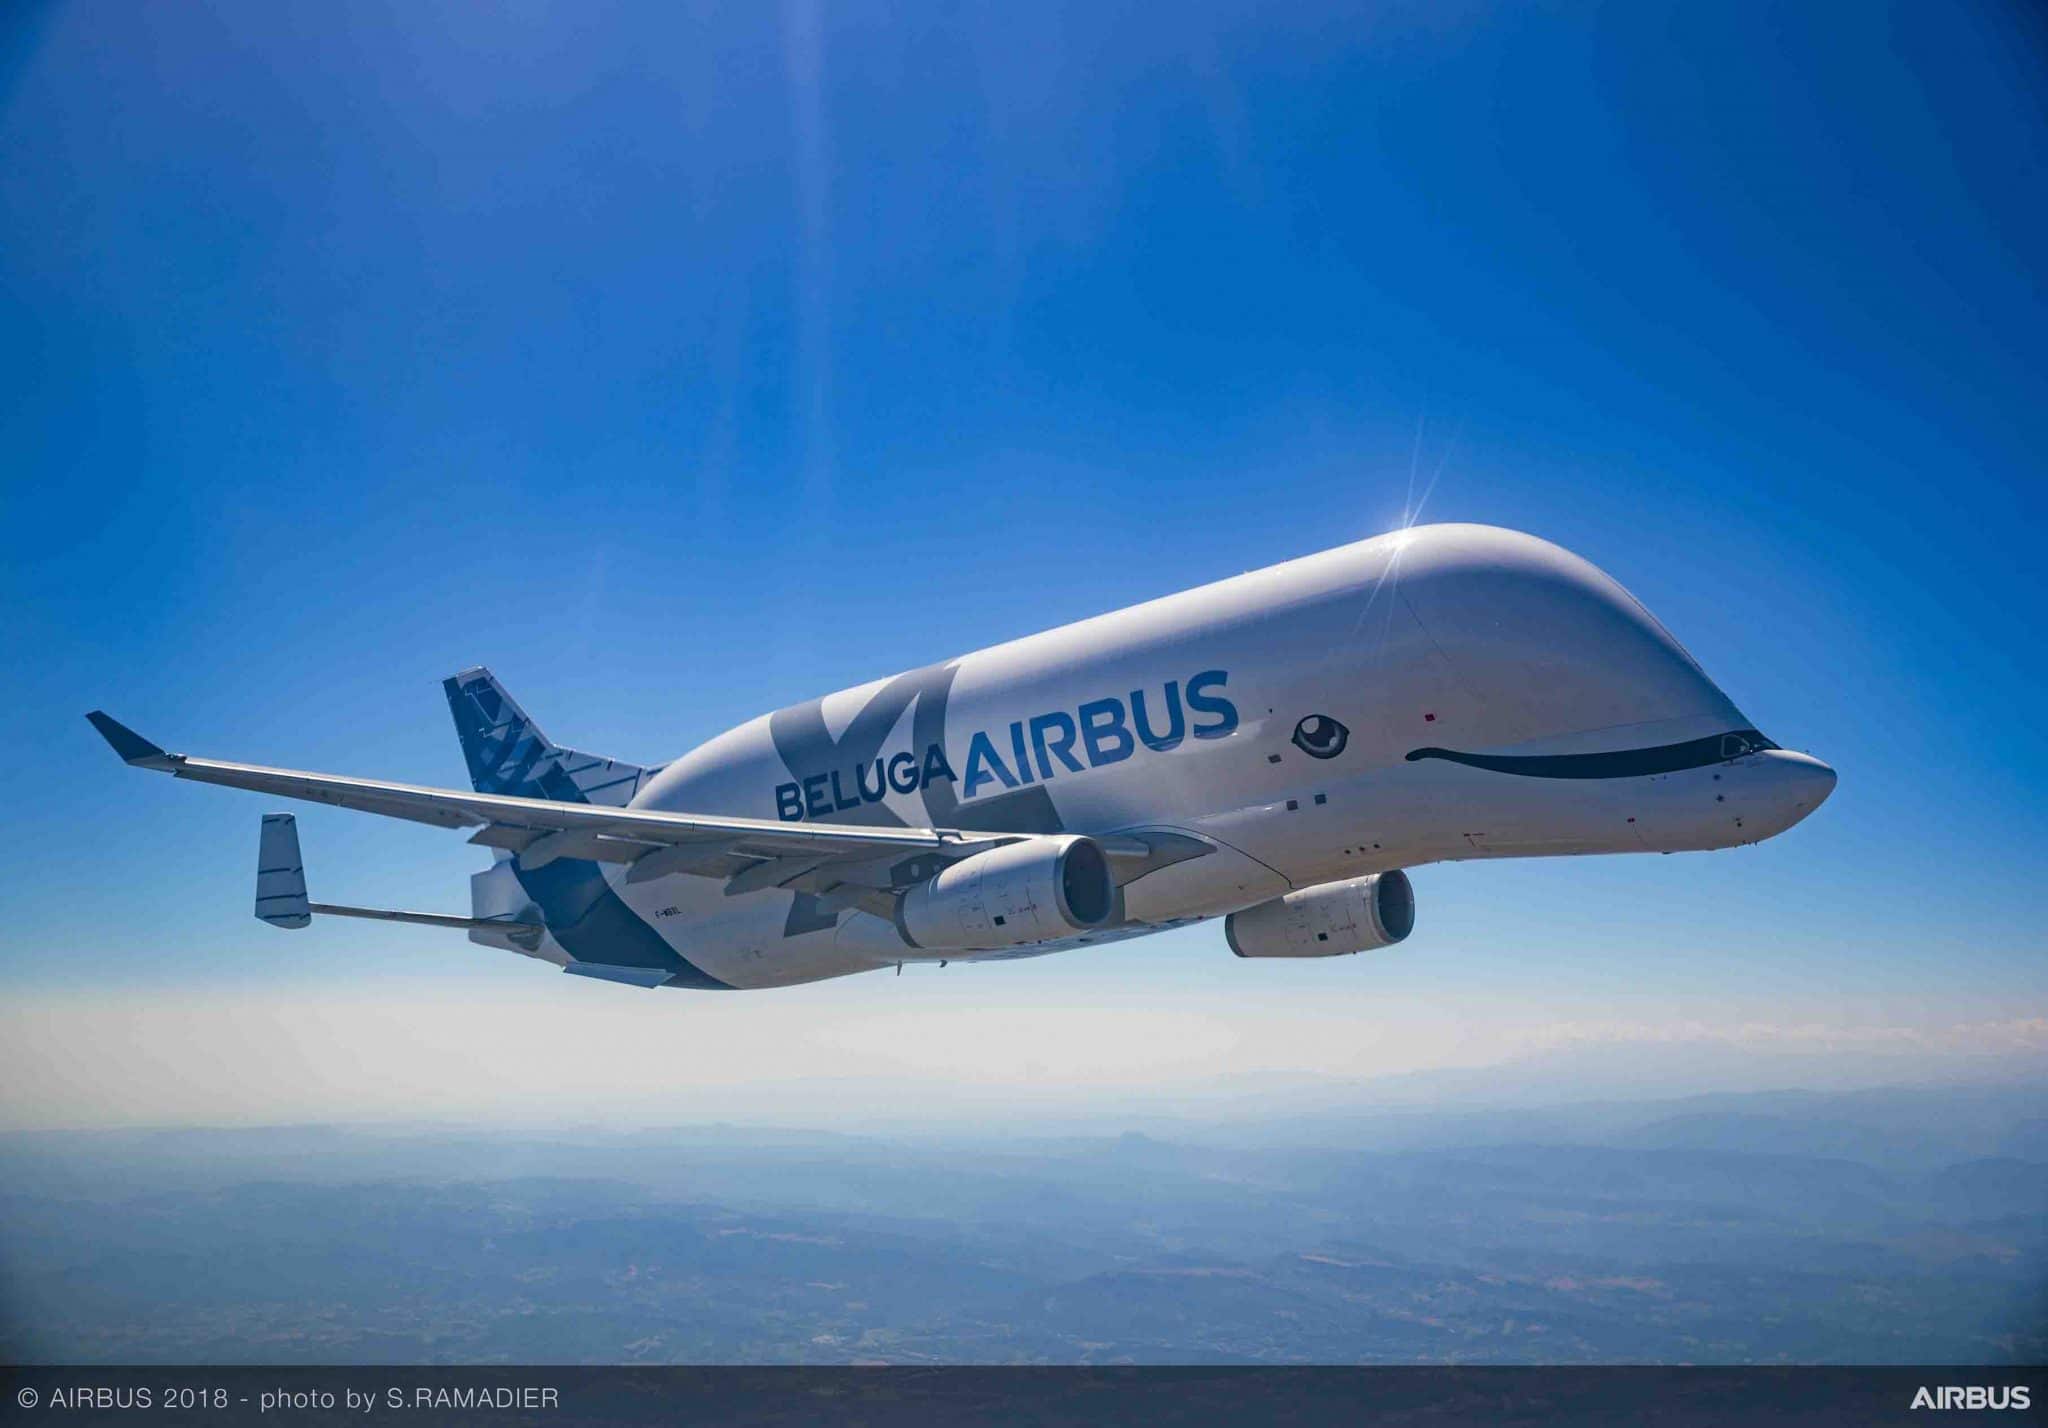 Airbus Beluga XL เริ่มให้บริการอย่างเป็นทางการ เสริมสมรรถนะในการขนส่งให้ฝูงบิน 1